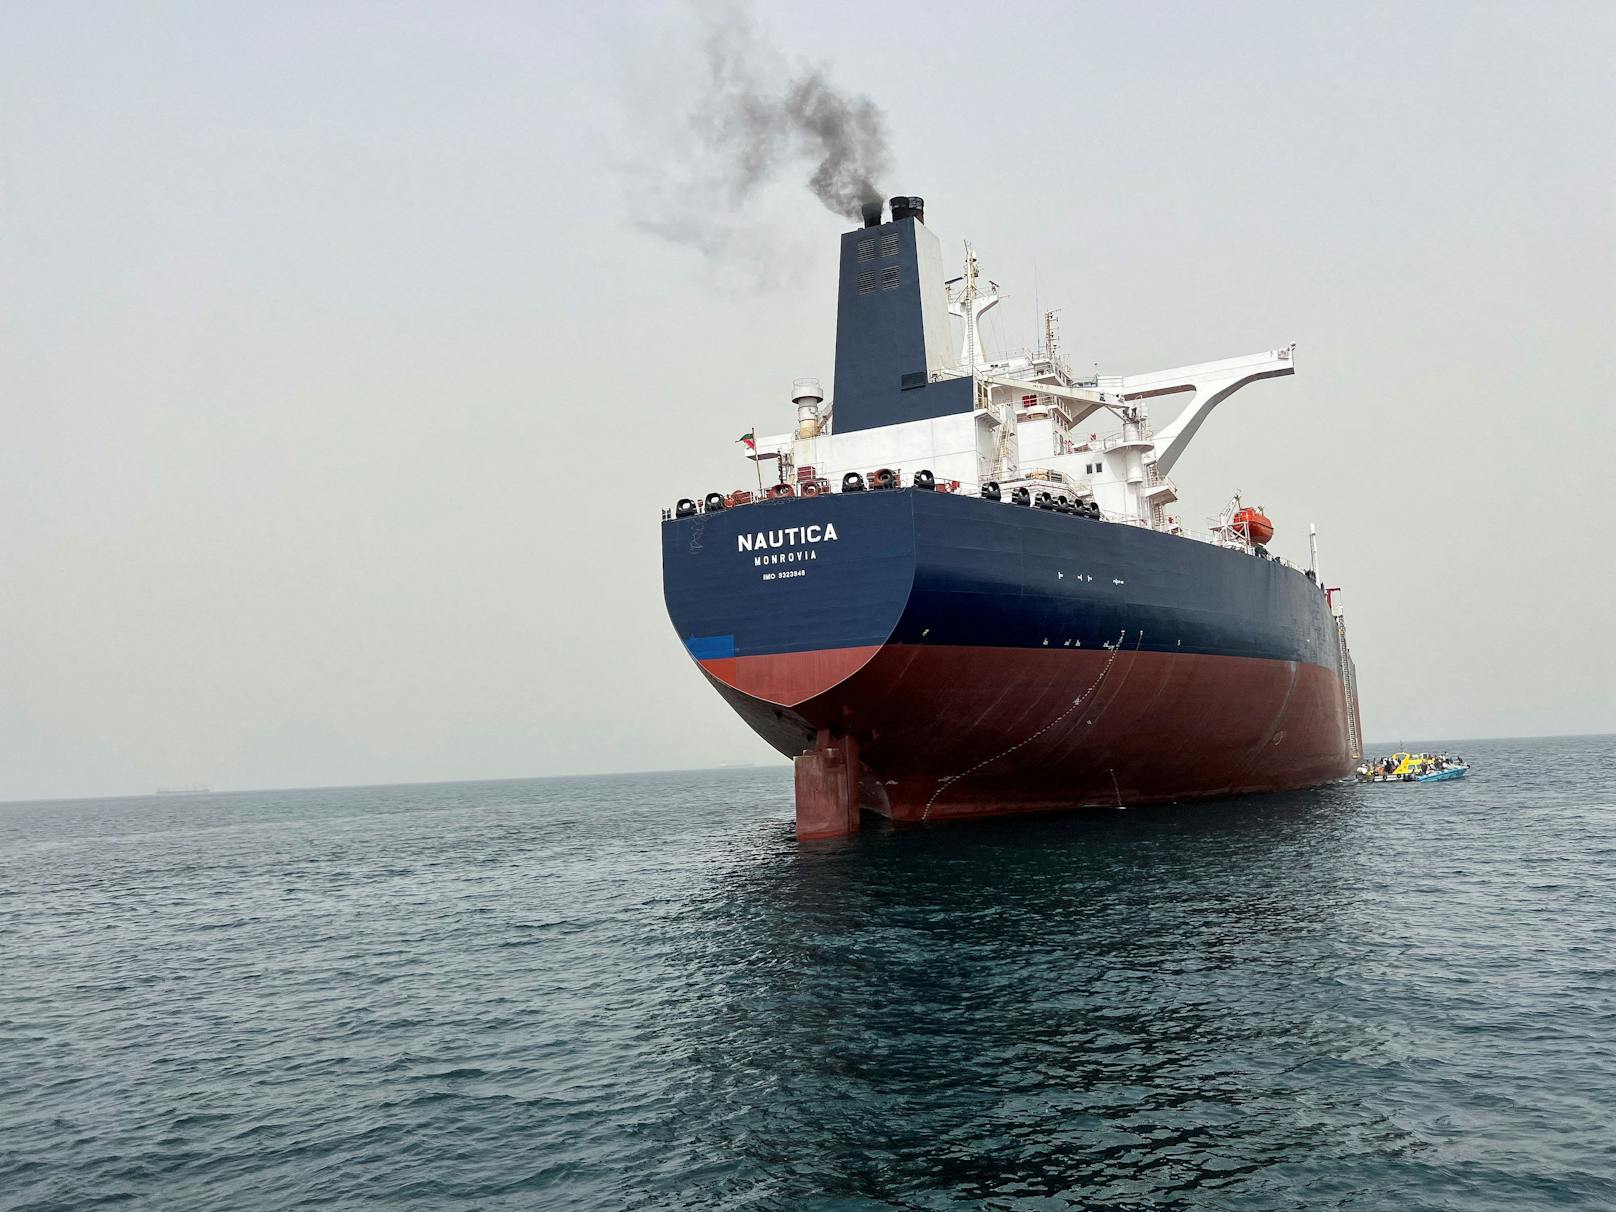 Jemen – UNO pumpt Öl aus schrottreifem Tanker ab